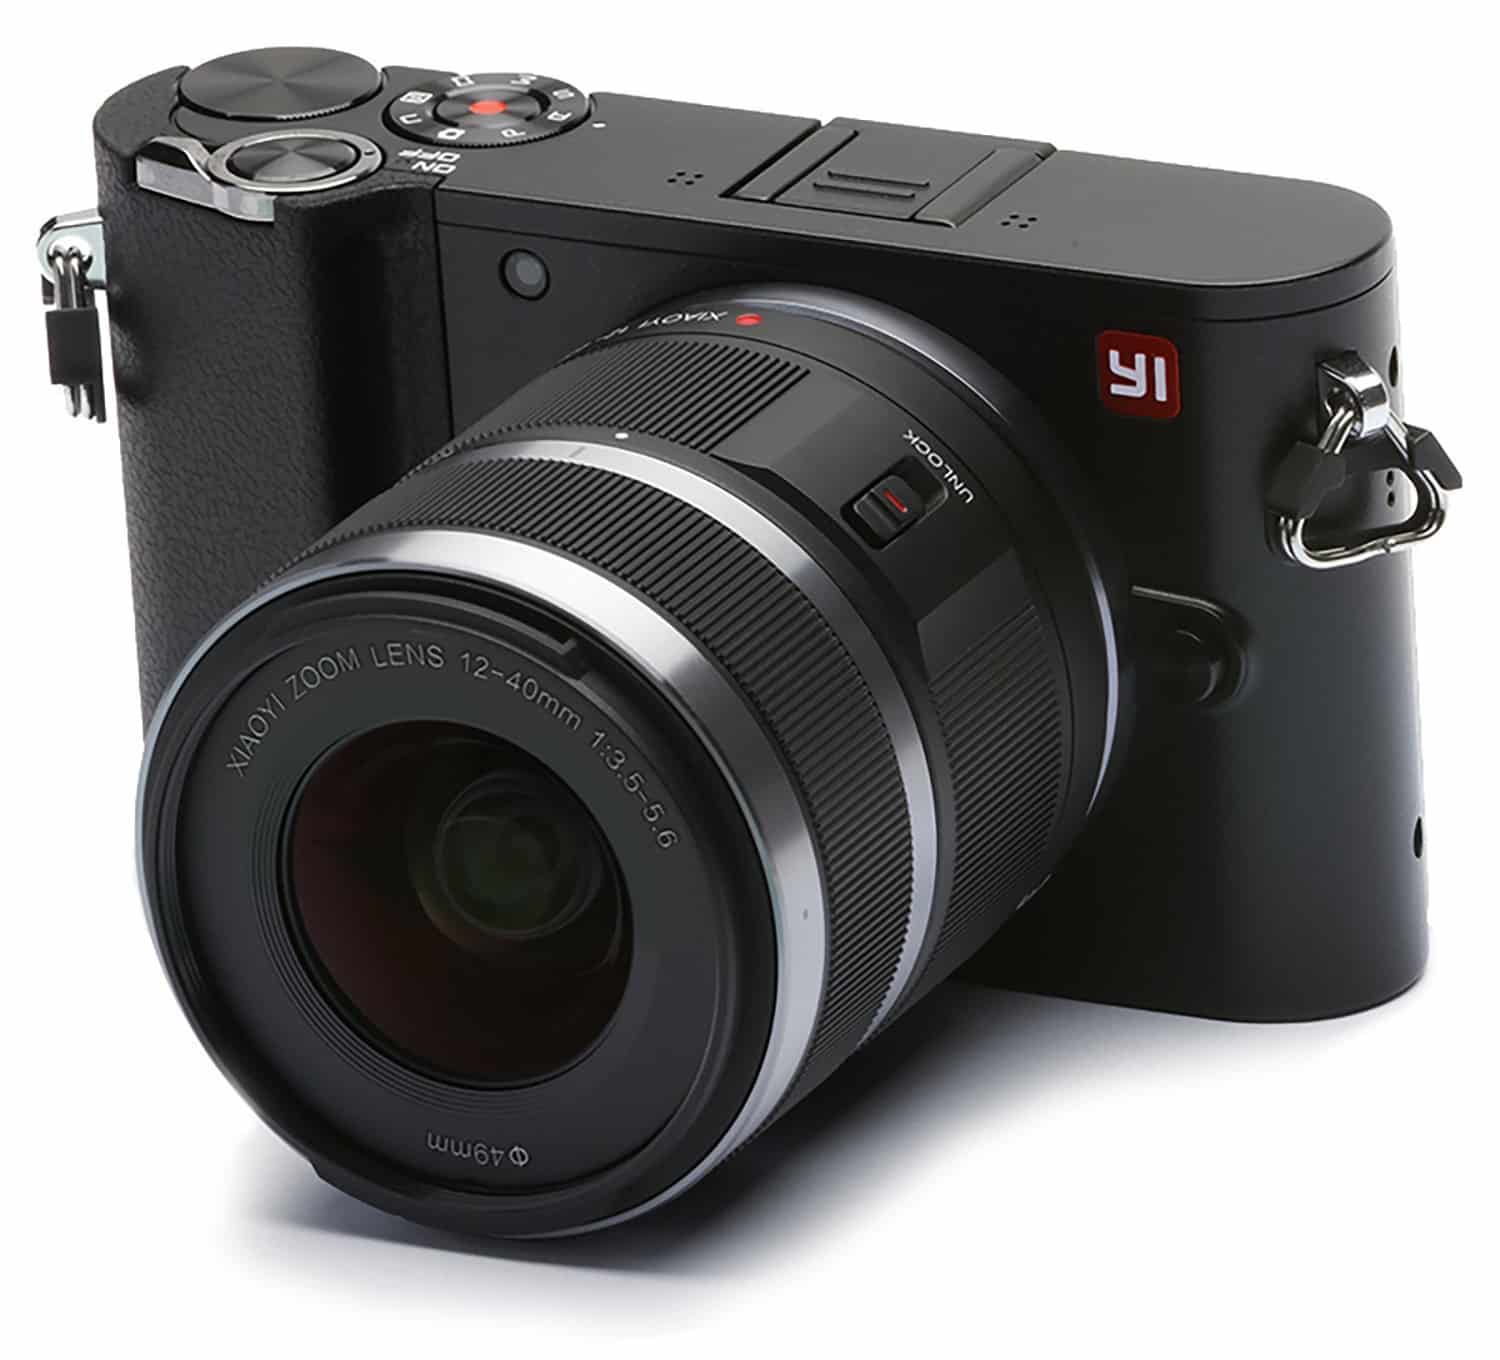 Best DSLR Camera Under 500? Top 5 Beginner Cameras For